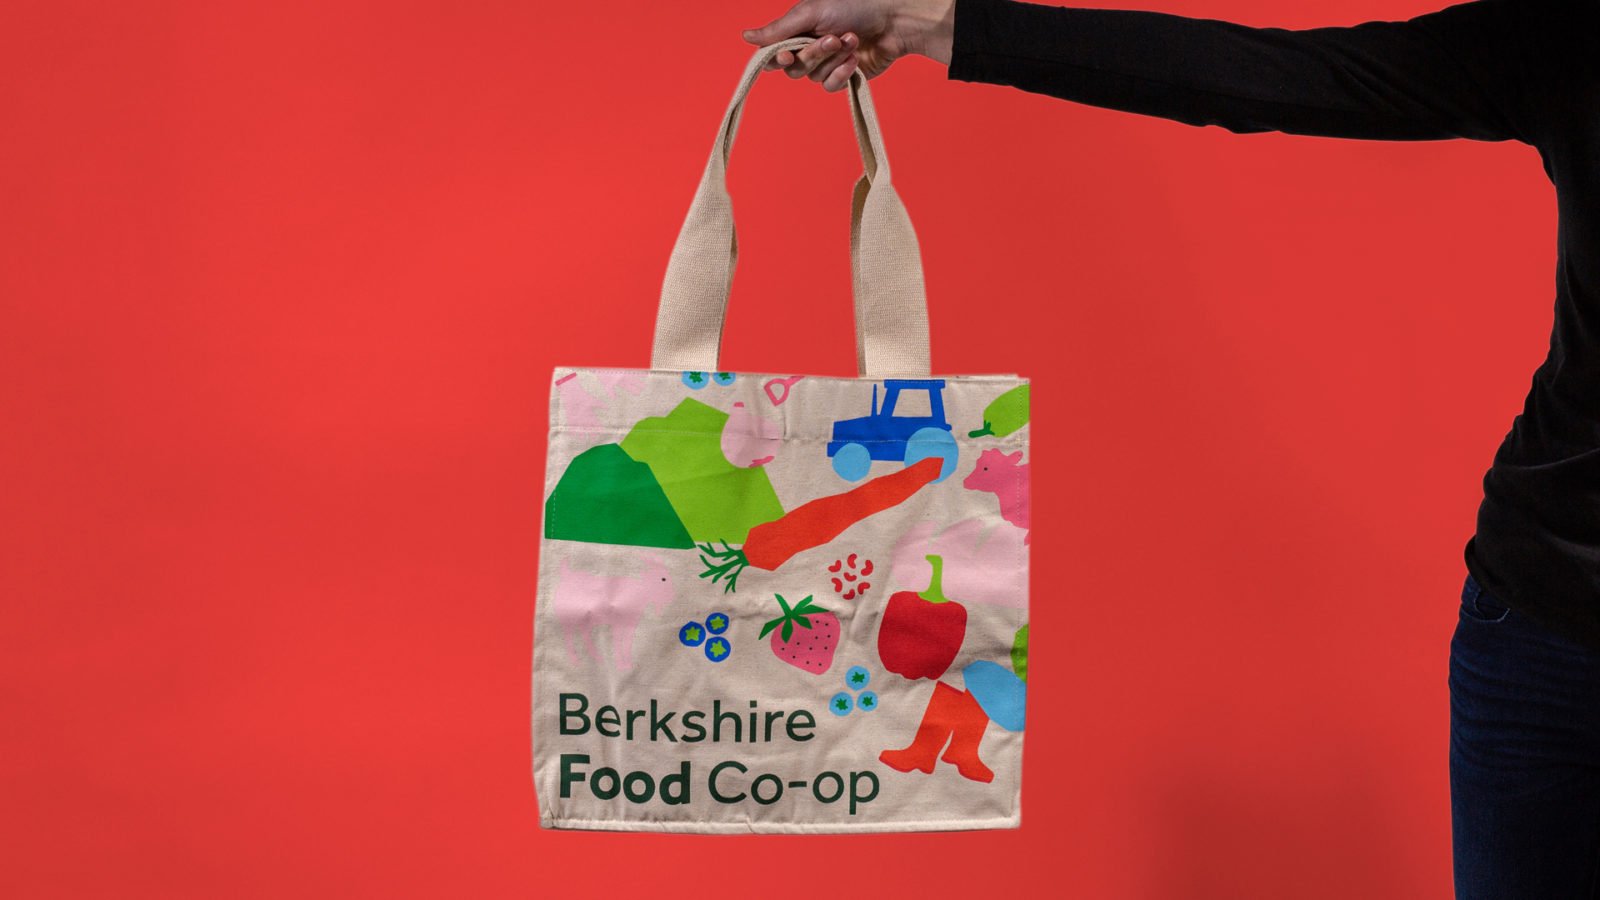 Berkshire Food Co-op